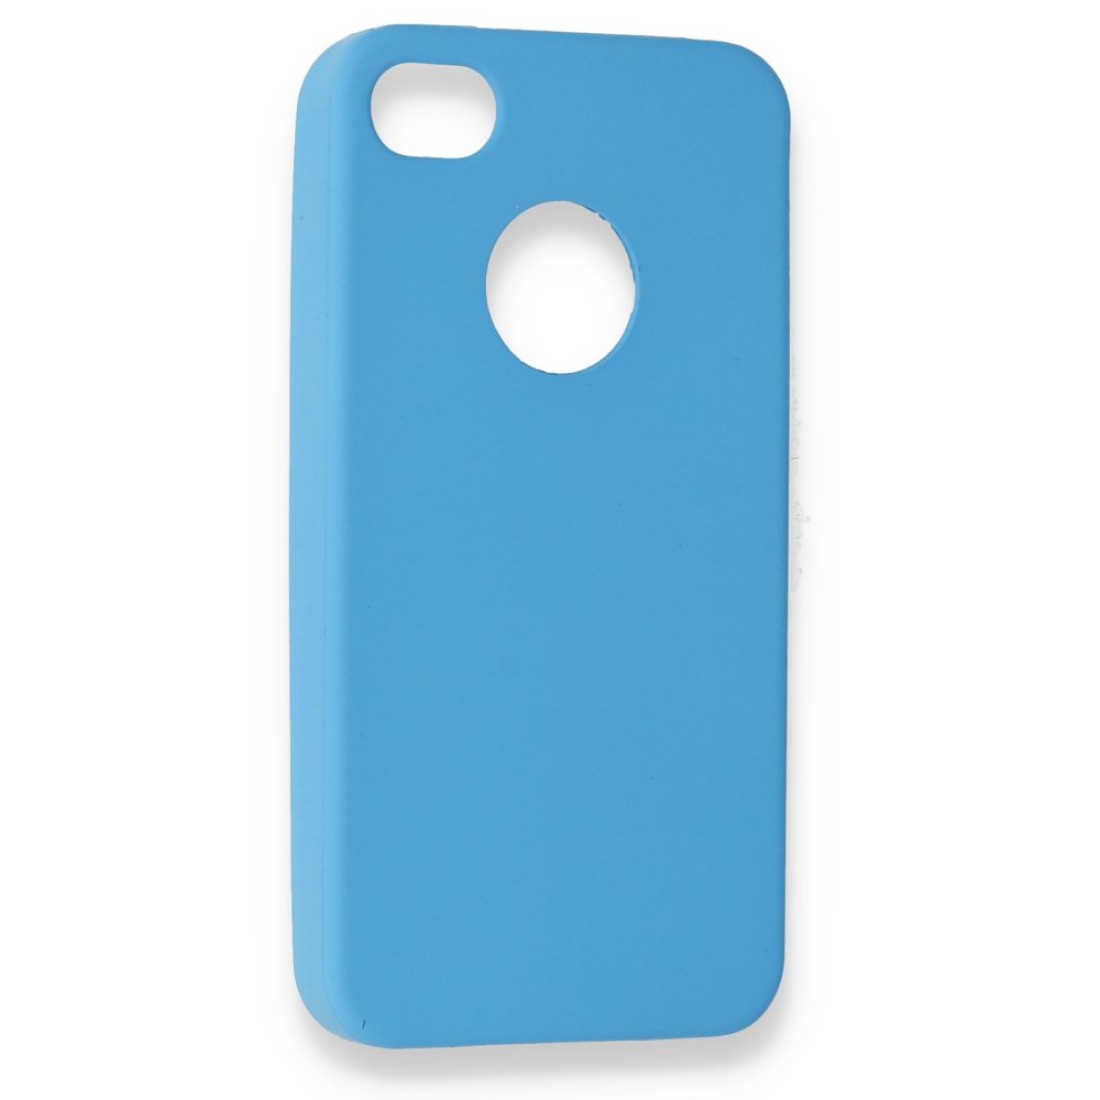 Apple iPhone 4 Kılıf Premium Rubber Silikon - Mavi